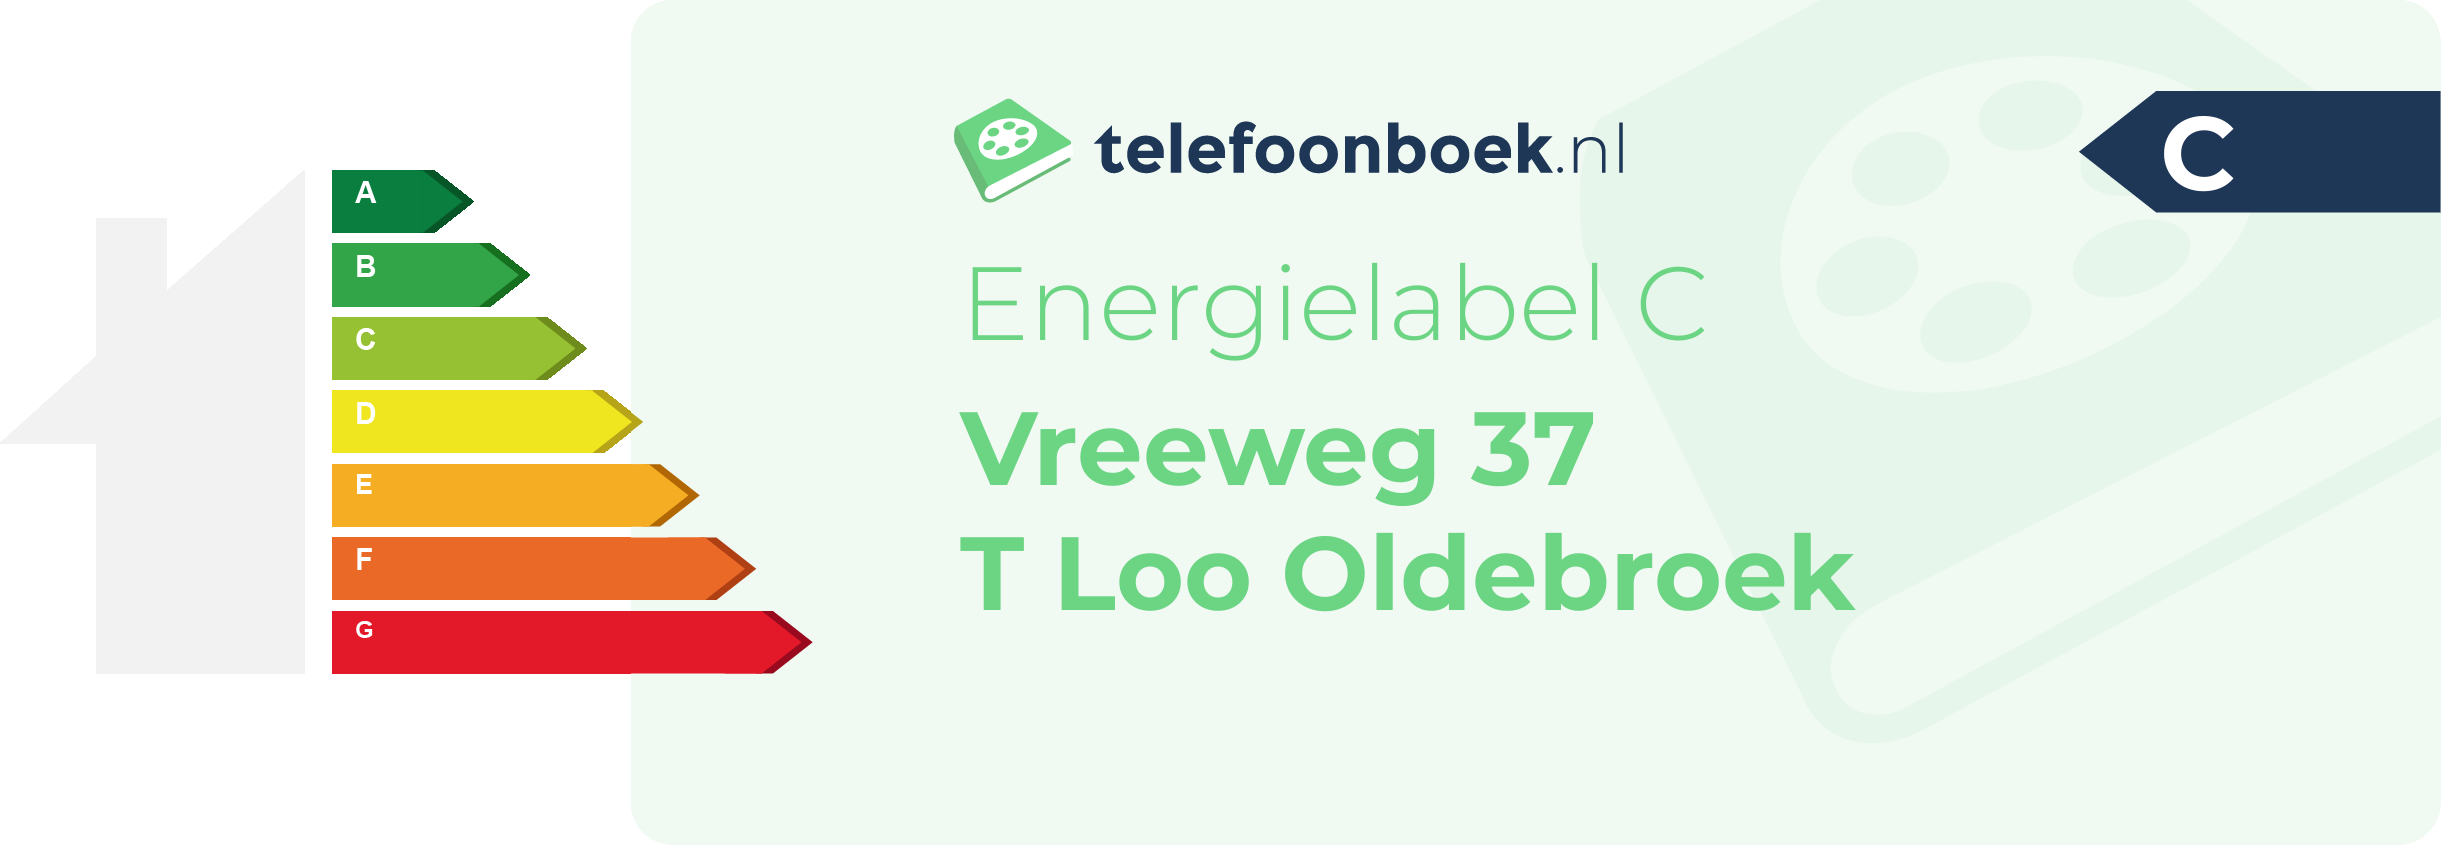 Energielabel Vreeweg 37 T Loo Oldebroek